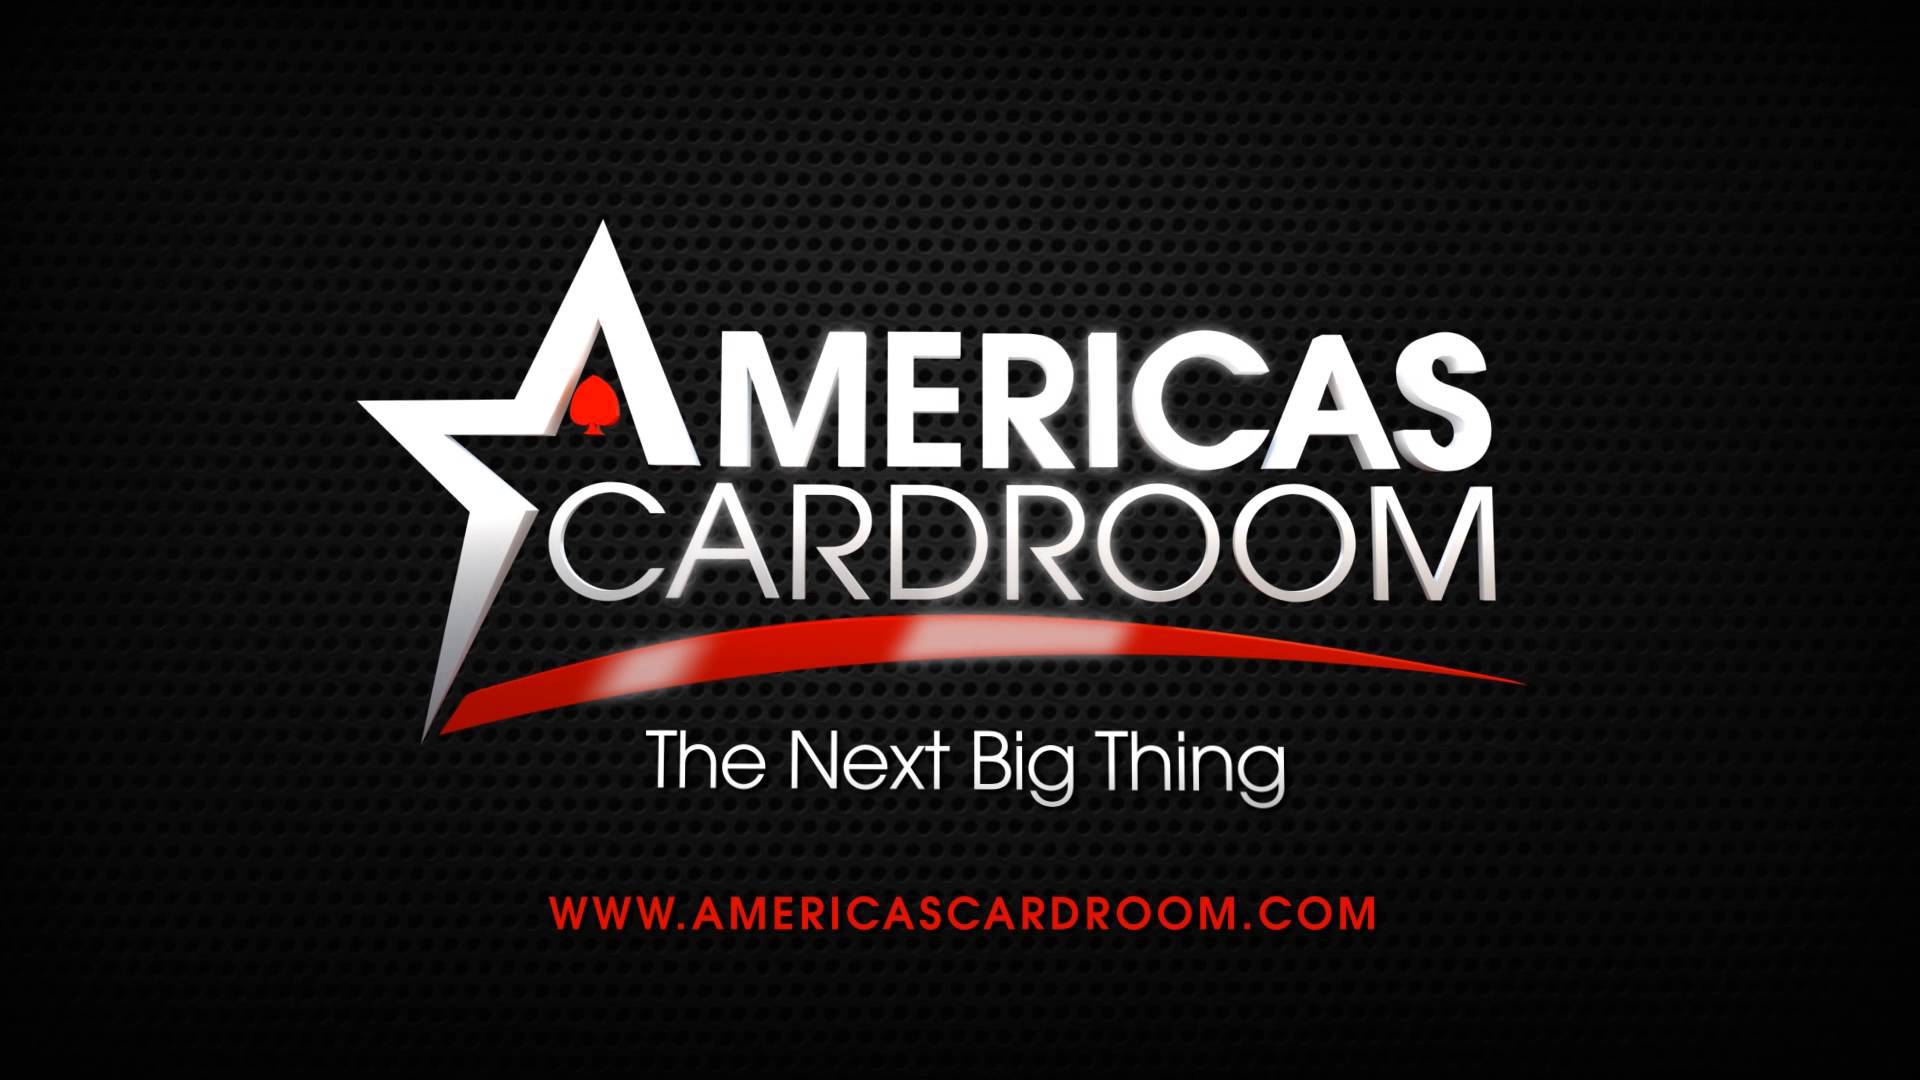 Americas Cardroom DDoS attack